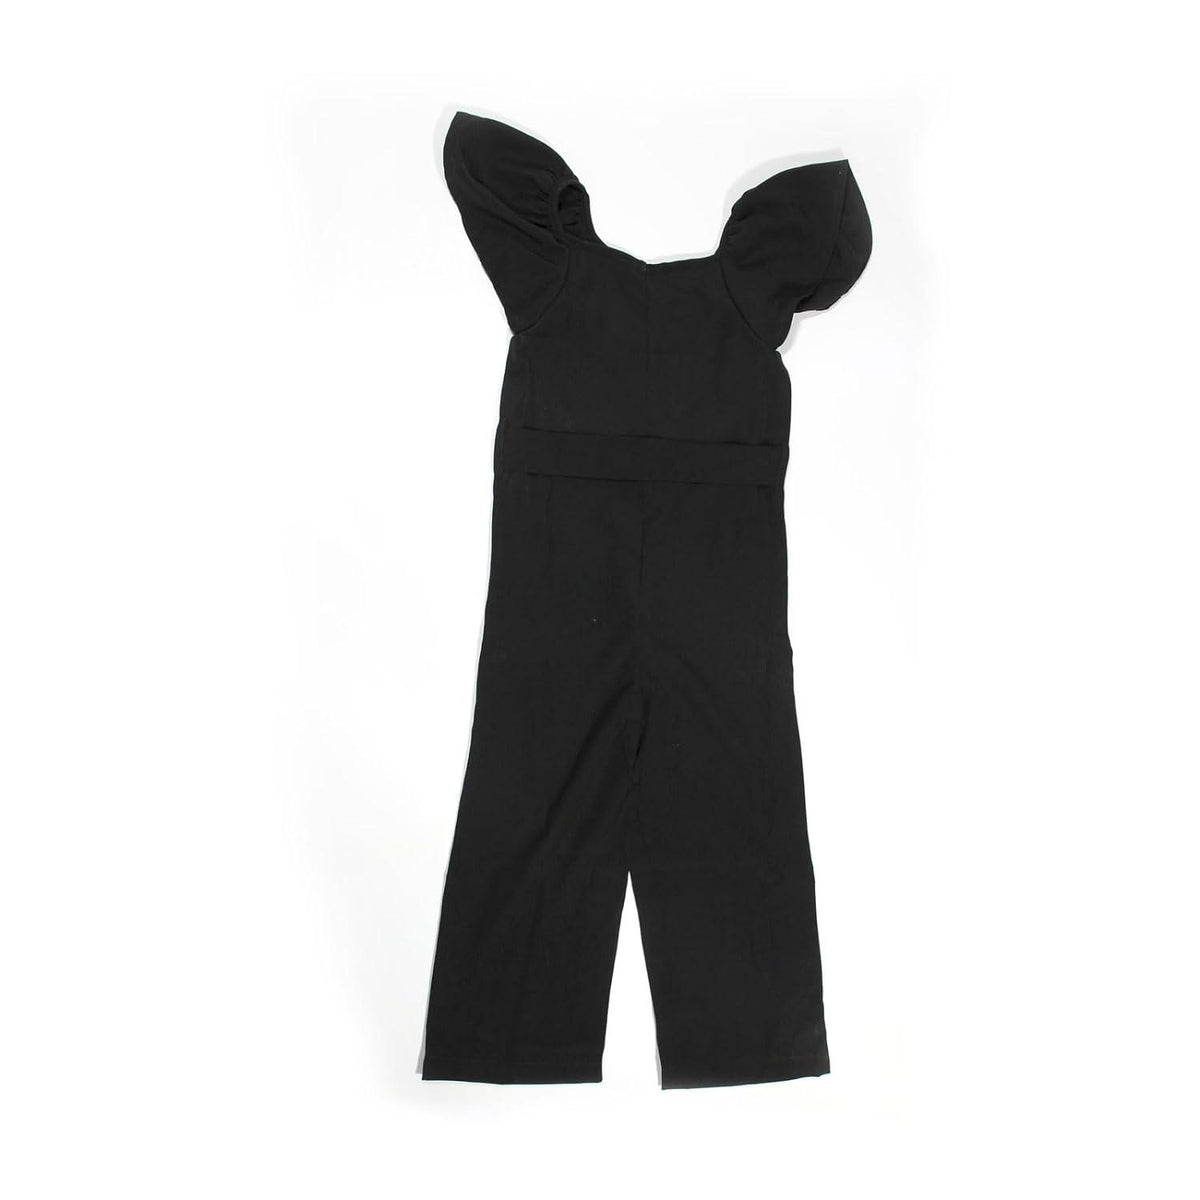 Haoser Girls Flared Sleeves Printed Jumpsuit|Girls' Jumpsuits & Rompers|Black Jumpsuit for girls - Haoser